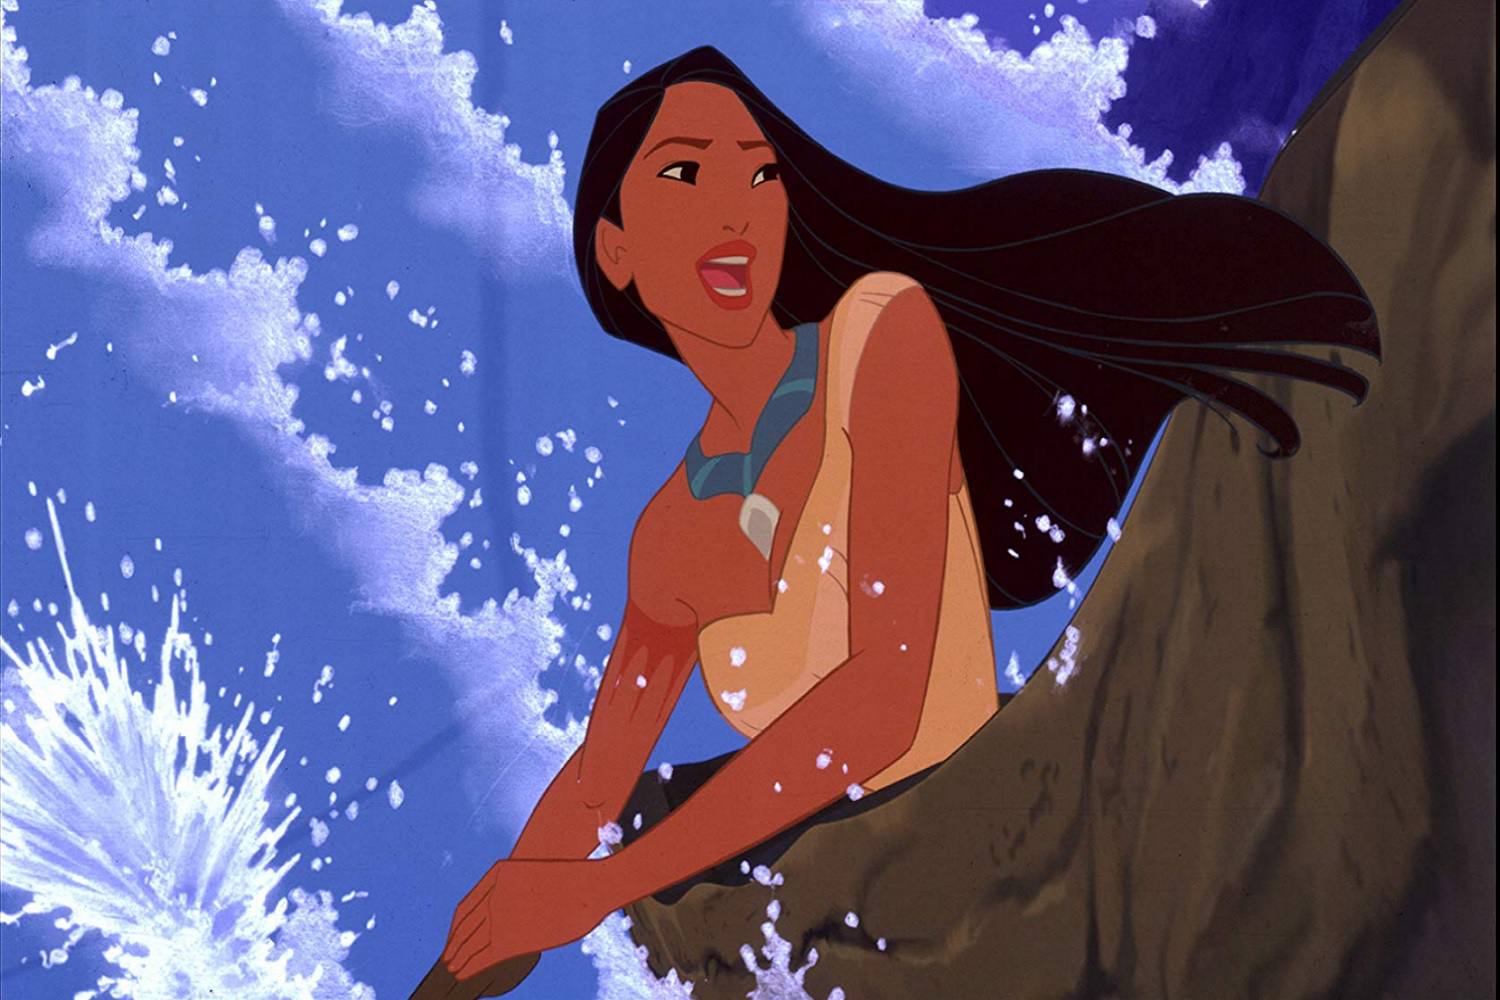 Een screenshot van een scène uit de animatiefilm Pocahontas.  De scène is voorzien van de titulaire karakter.